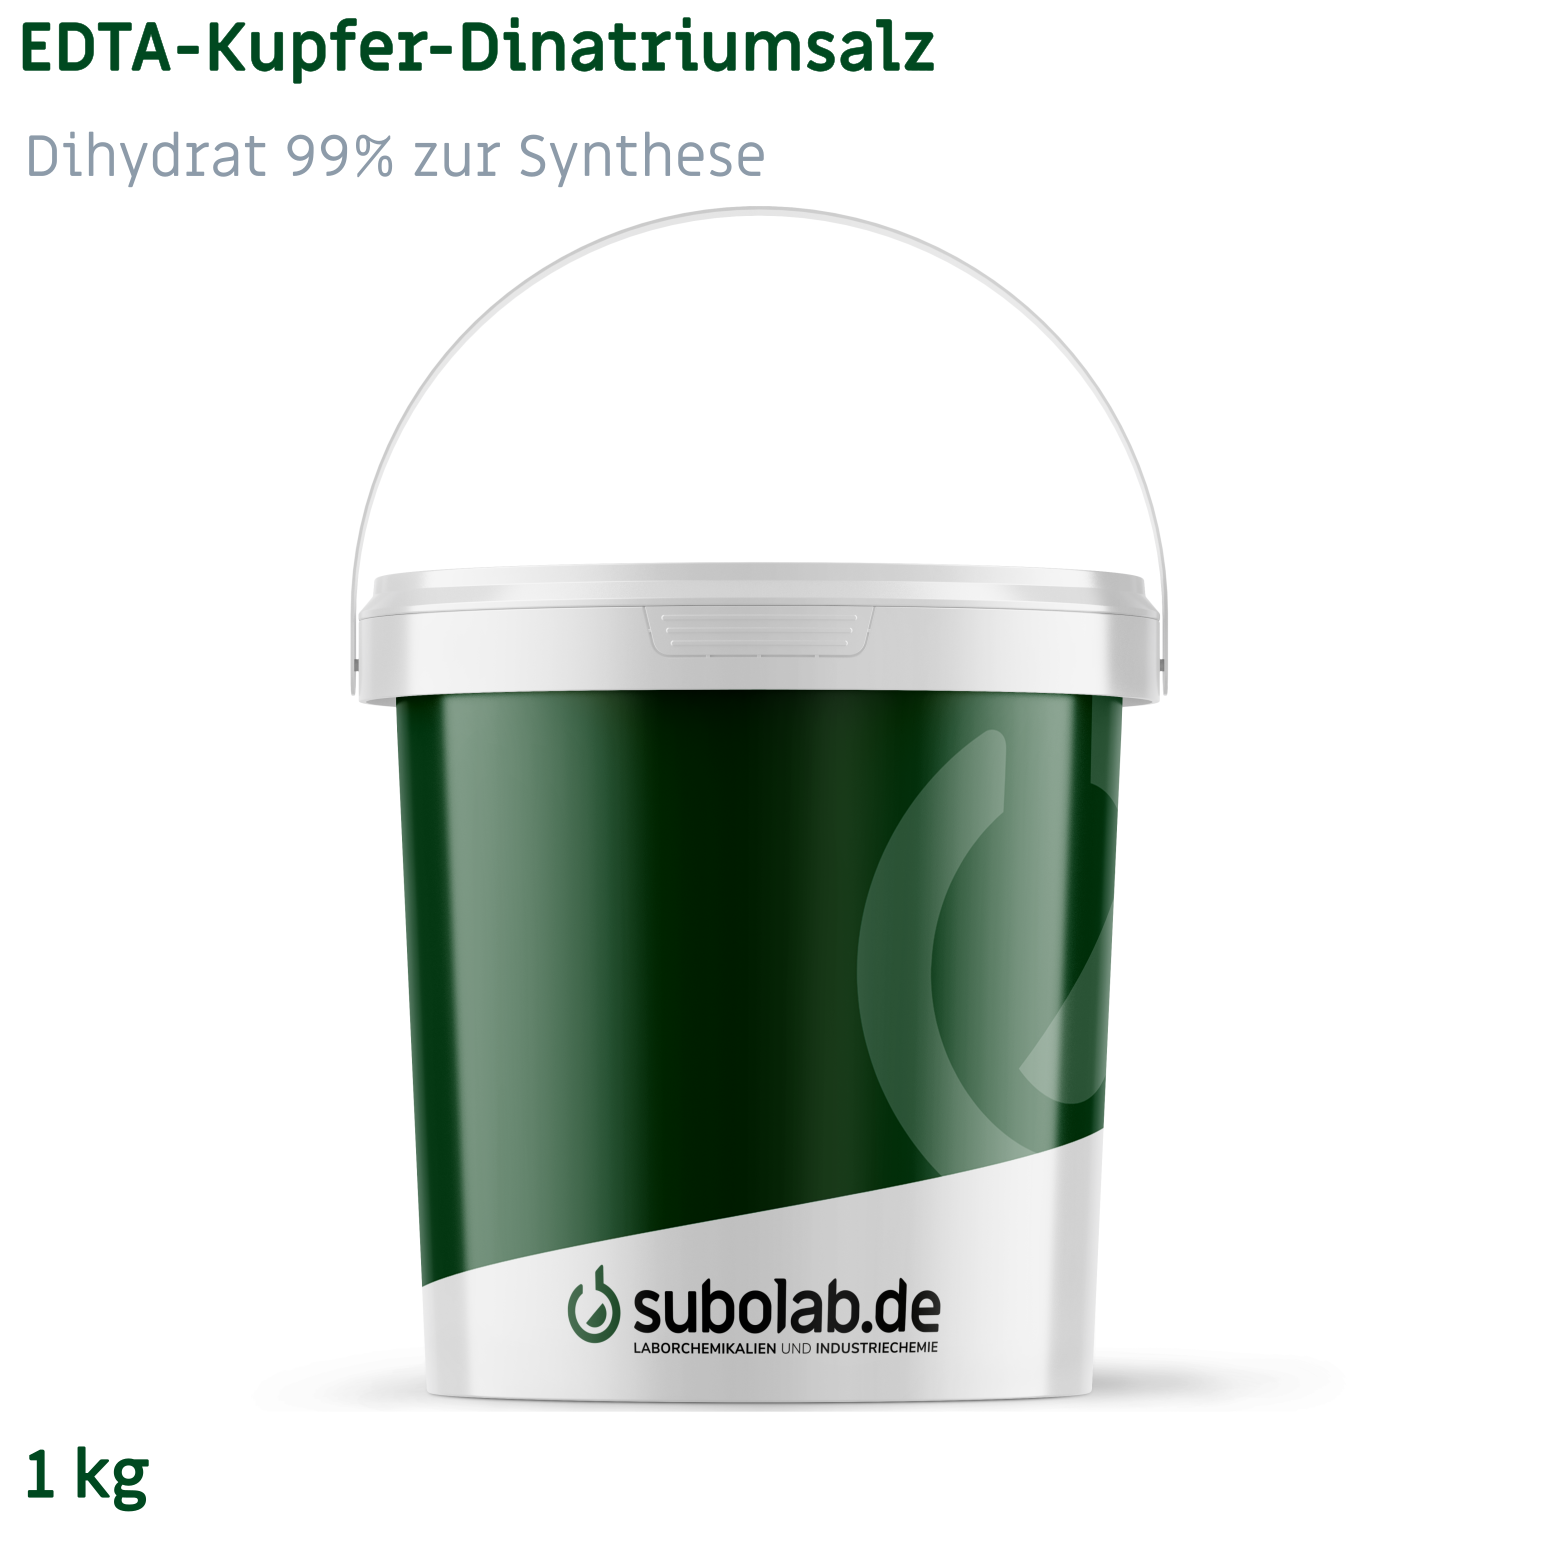 Bild von EDTA - Kupfer - Dinatriumsalz - Dihydrat 99% zur Synthese (1 kg)